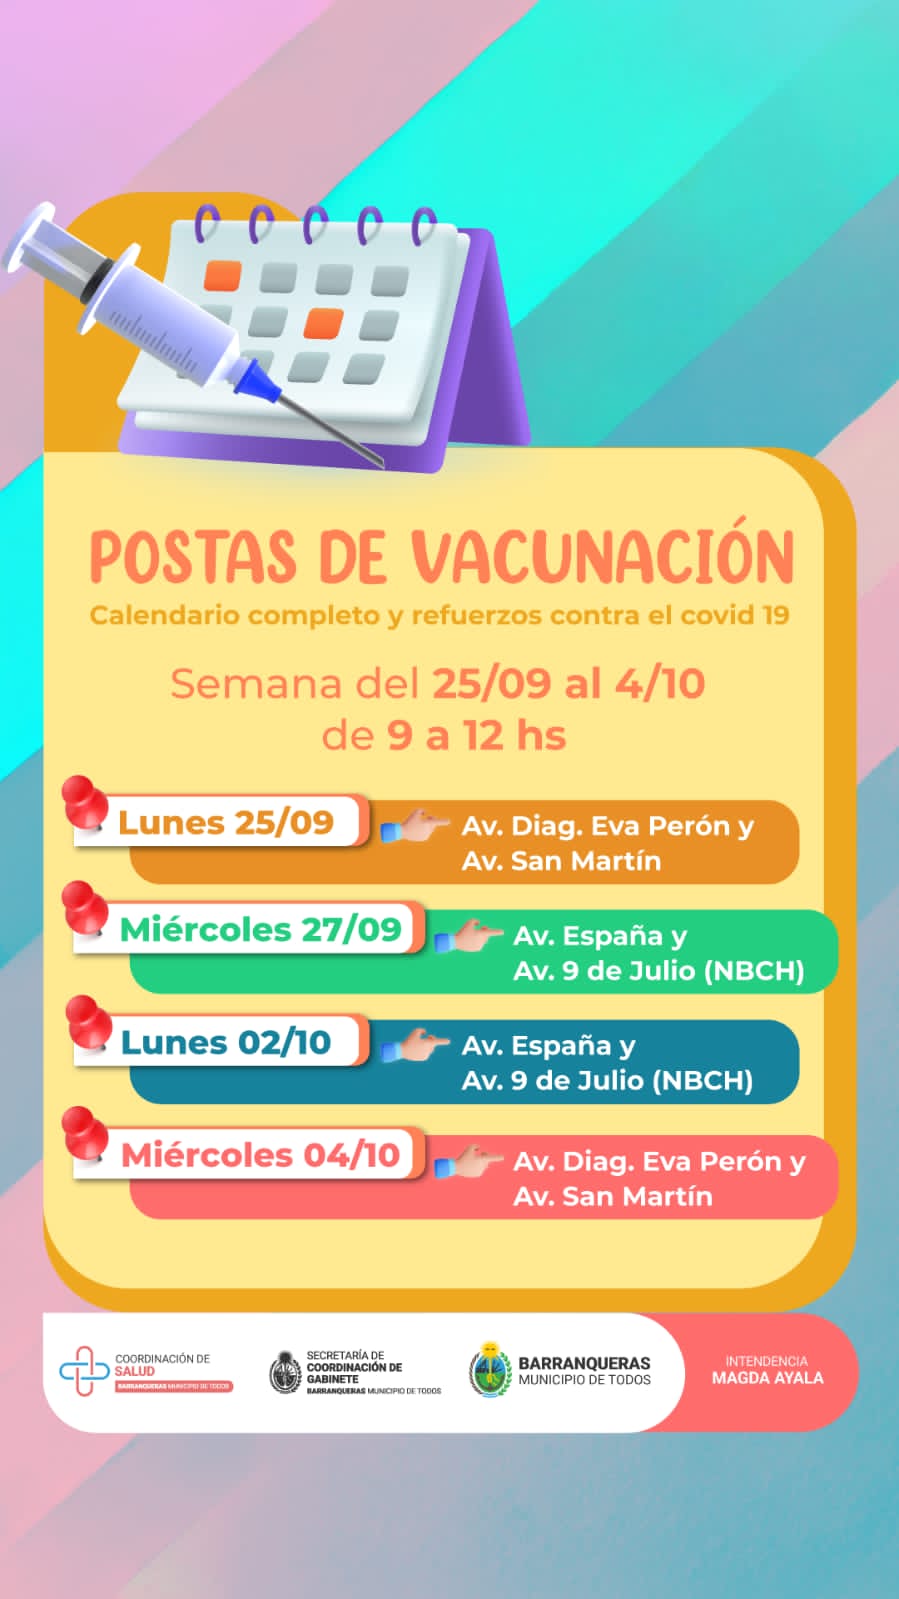 Postas de vacunación en Barranqueras